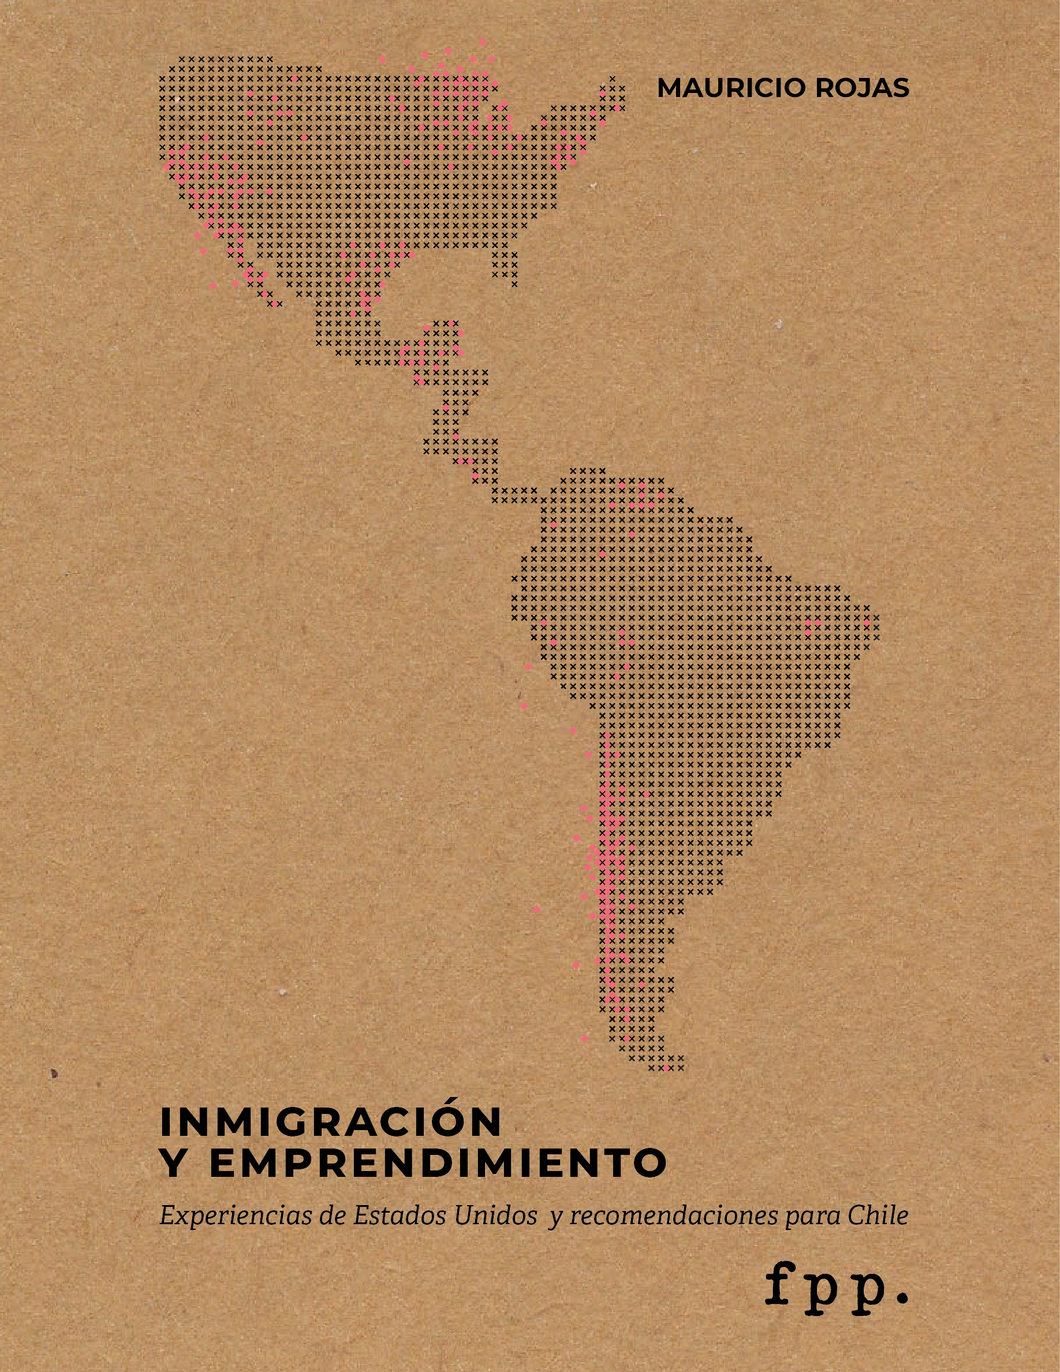 Mauricio Rojas: Inmigración y emprendimiento